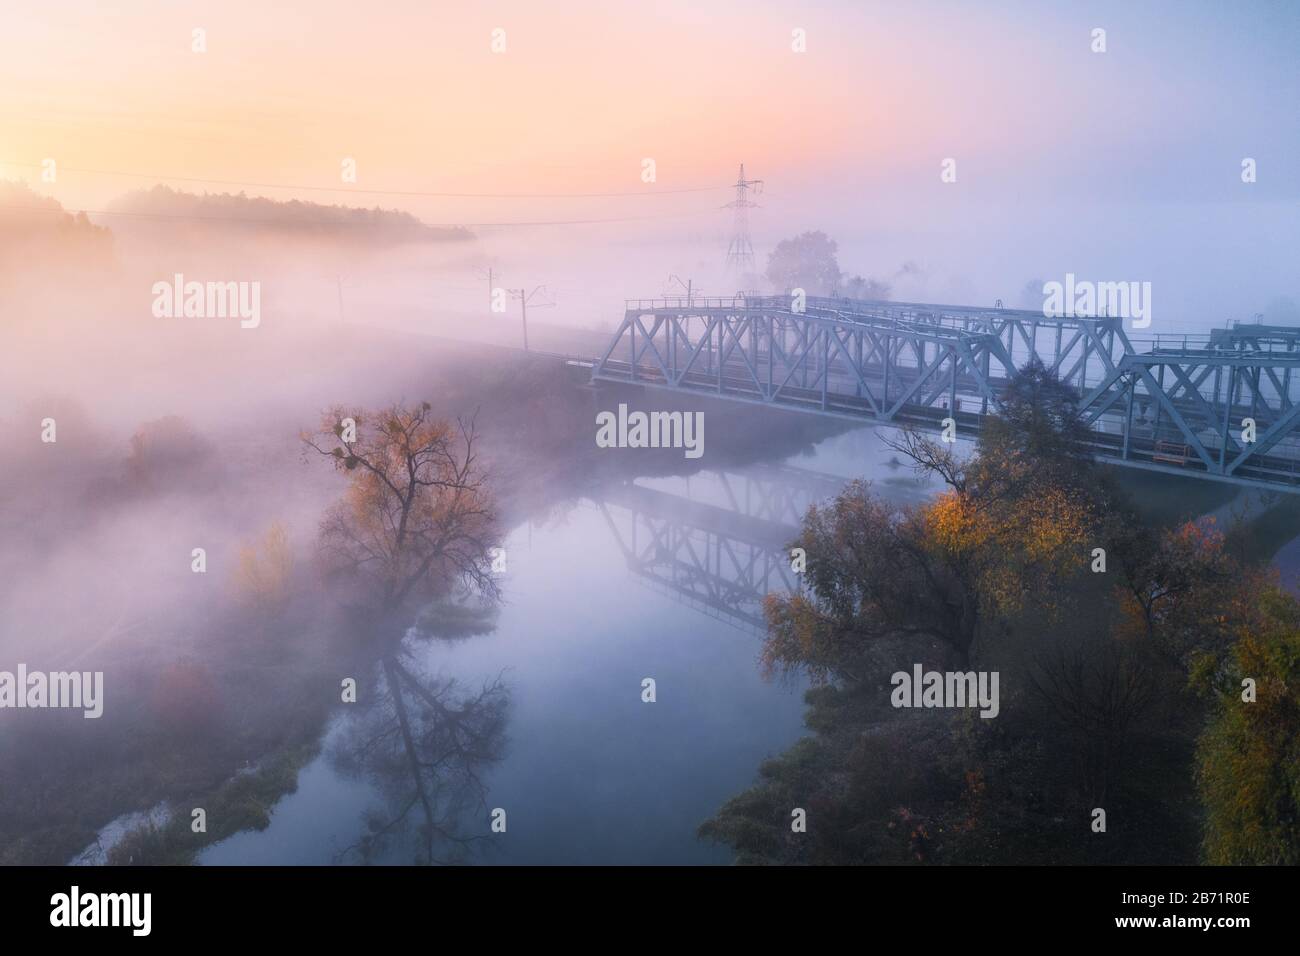 Vista aerea del bellissimo ponte ferroviario e del fiume in nebbia in autunno Foto Stock